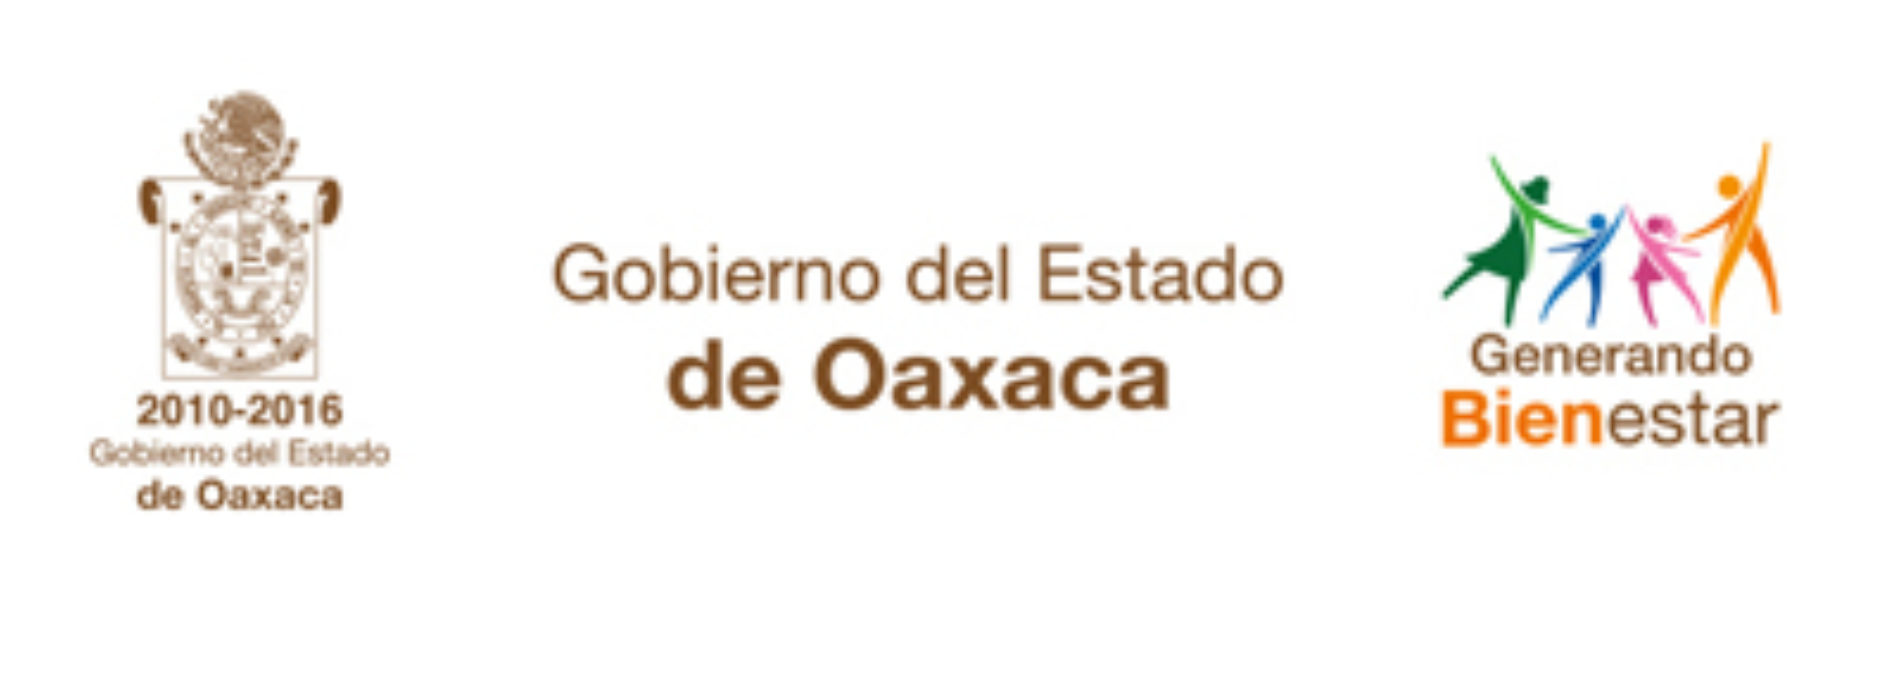 Este lunes 20 de junio habrá clases con normalidad en los centros educativos de Oaxaca: IEEPO